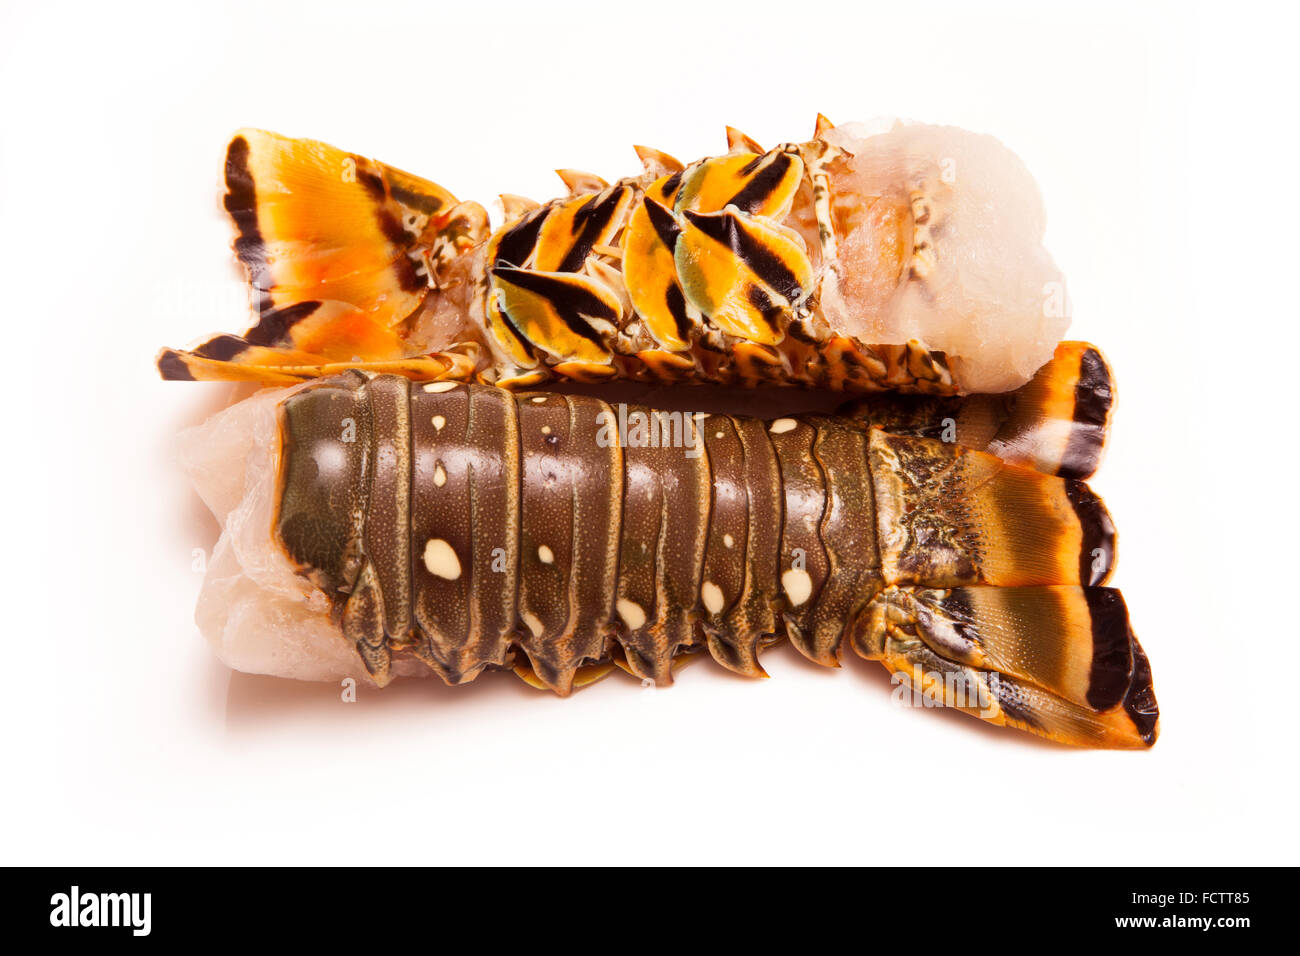 Rohe Karibik (Bahamas) Rock Lobster (Panuliirus Argus) oder Languste Zahl isoliert auf einem weißen Studio-Hintergrund. Stockfoto